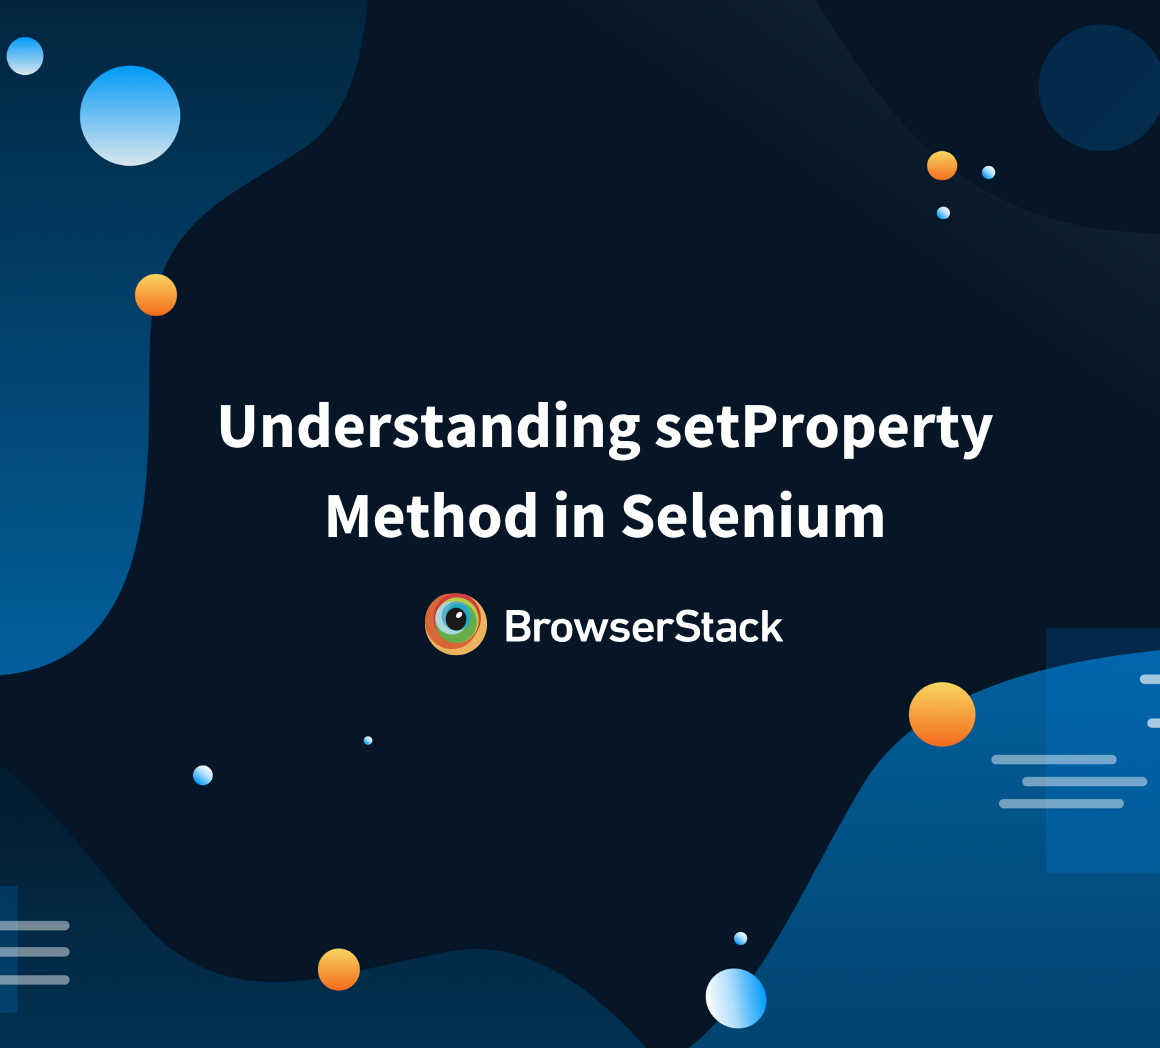 setProperty in Selenium